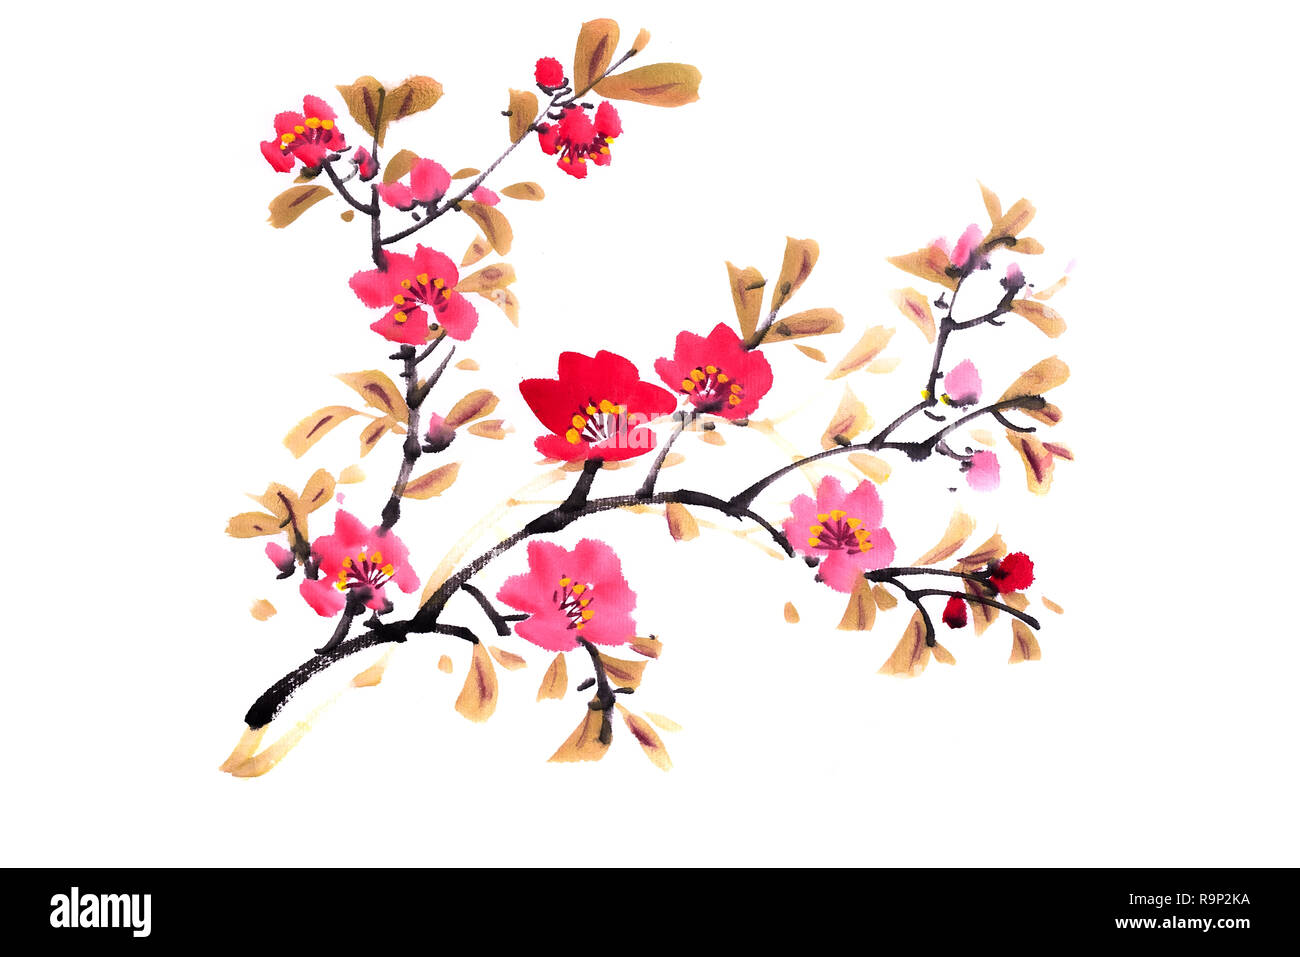 Peinture chinoise, fleurs de prunier Banque D'Images